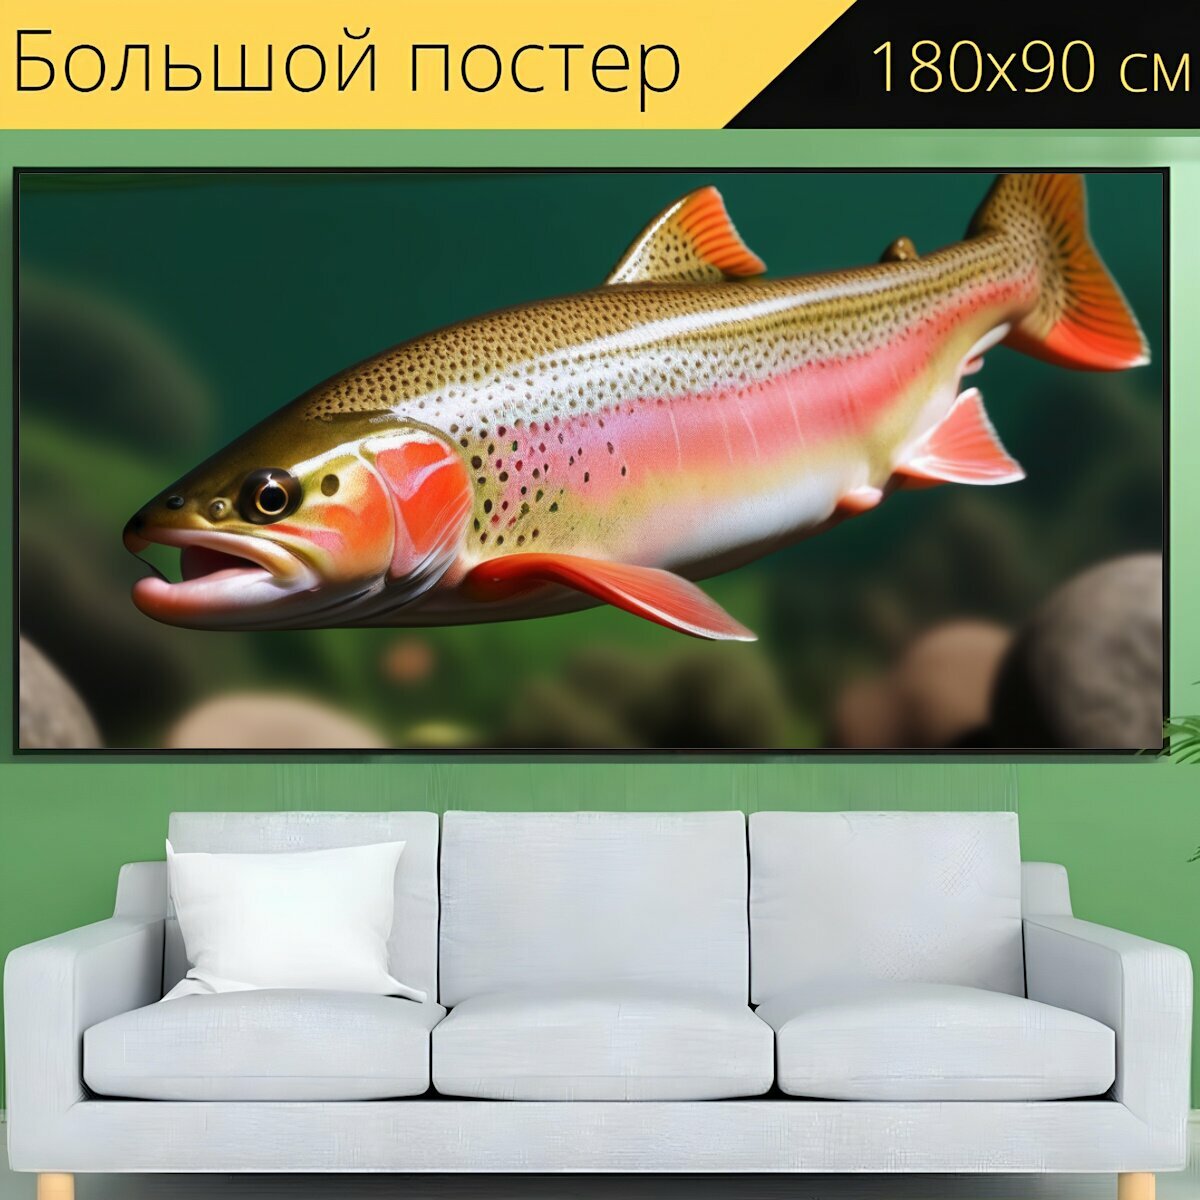 Большой постер любителям природы "Рыбы, форель, на дне" 180 x 90 см. для интерьера на стену